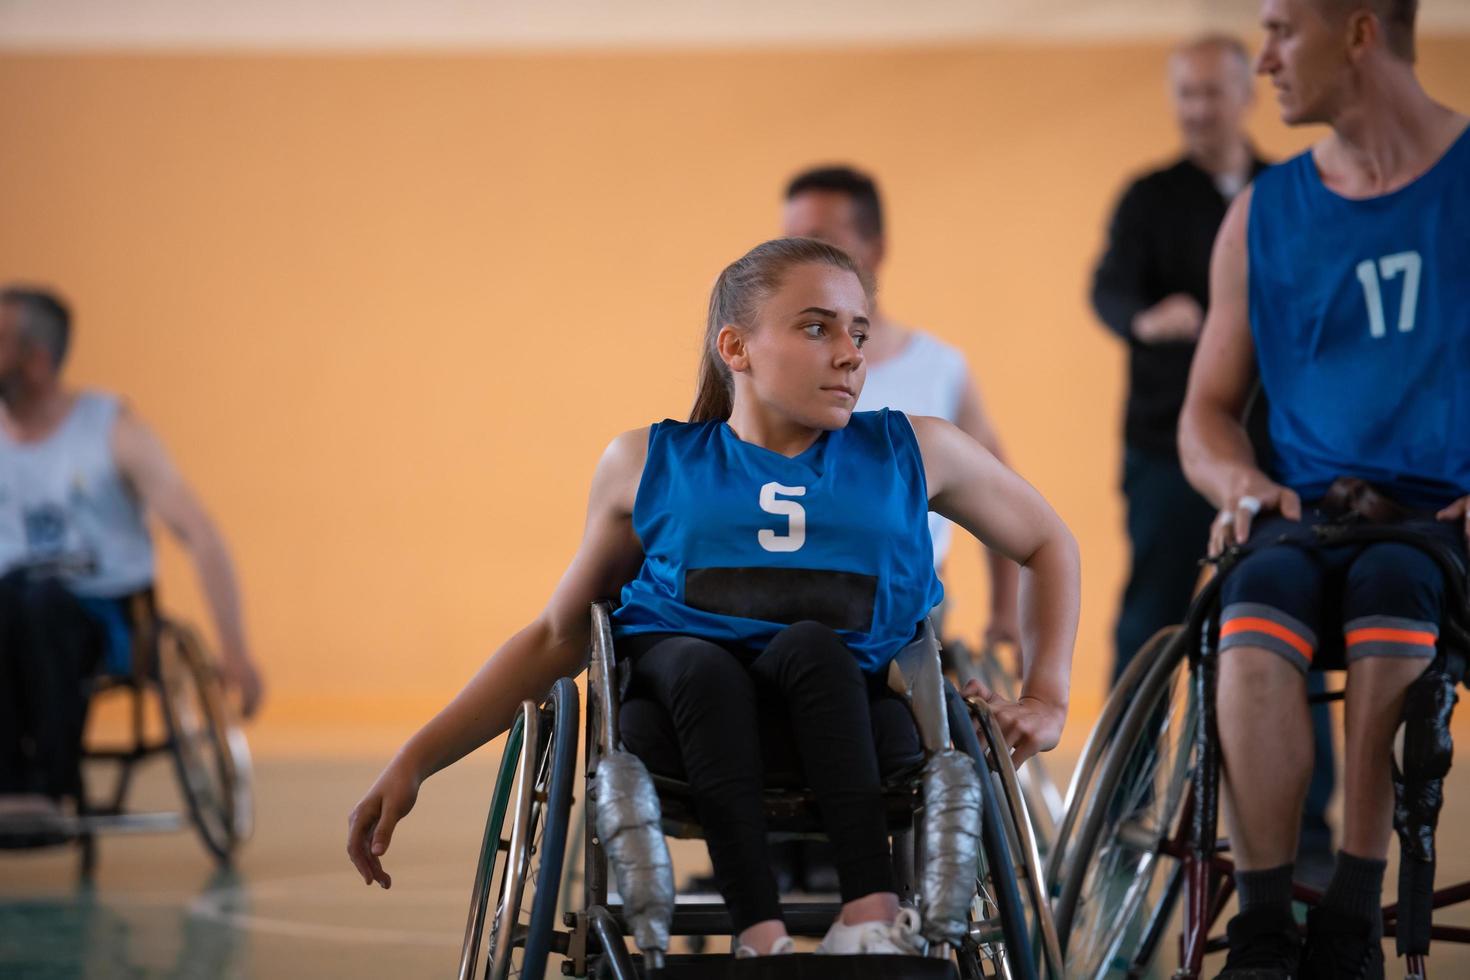 una joven jugando baloncesto en silla de ruedas en un equipo profesional. igualdad de género, el concepto de deportes con discapacidad. foto